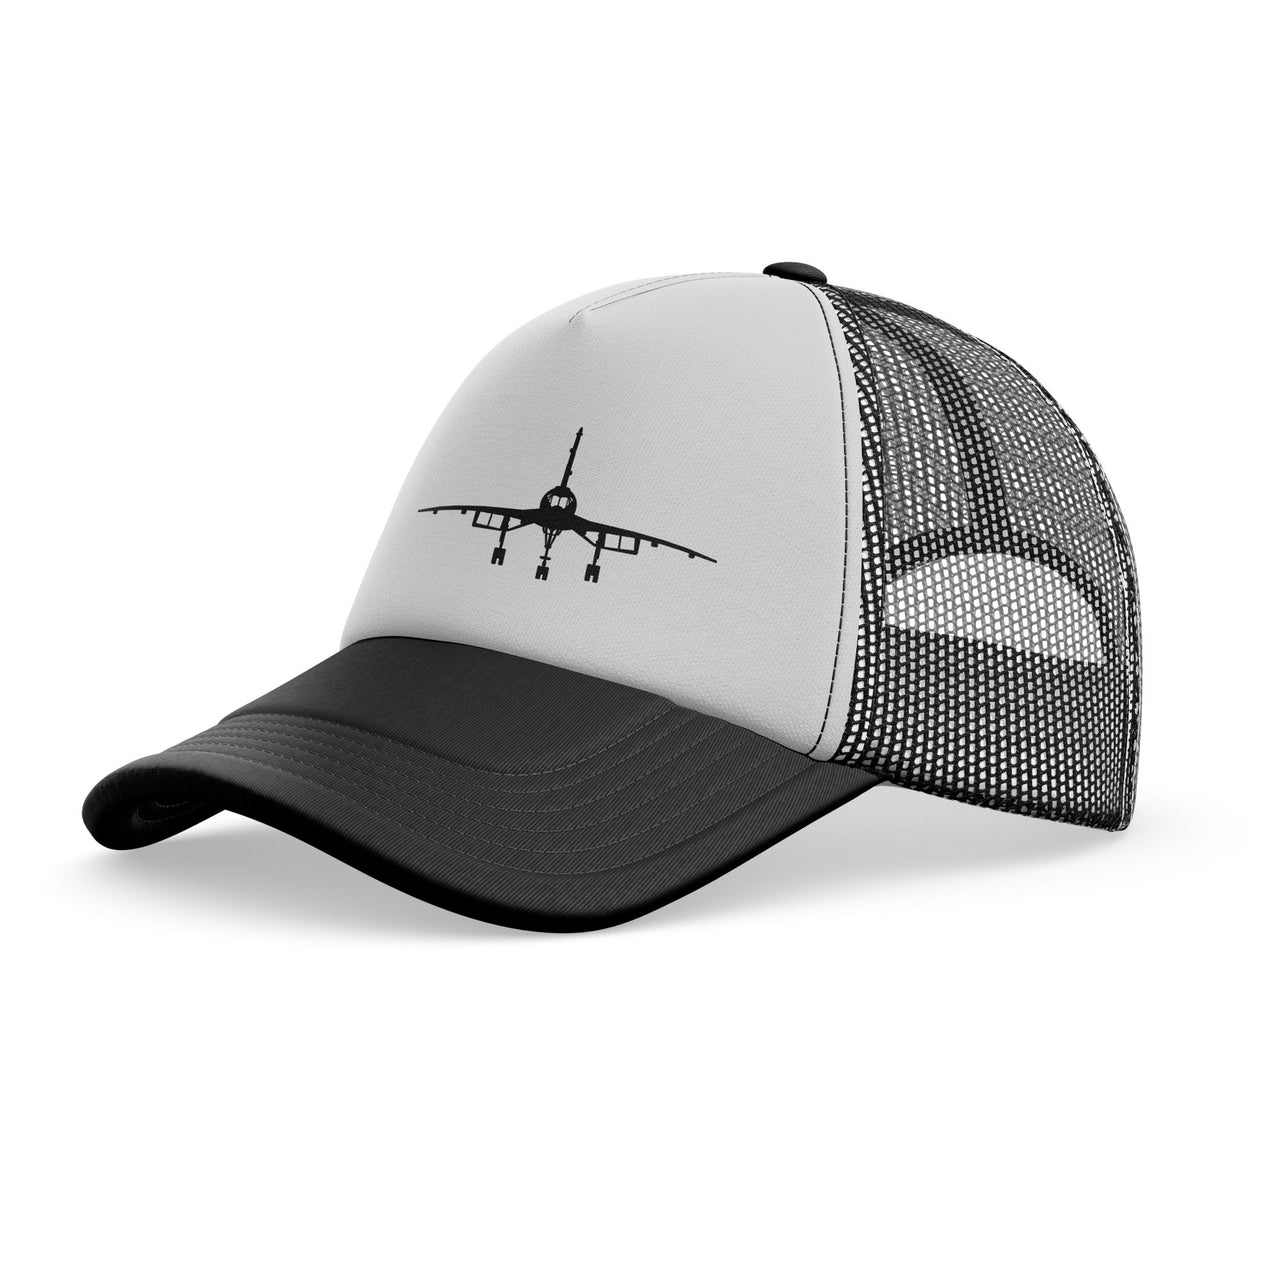 Concorde Silhouette Designed Trucker Caps & Hats